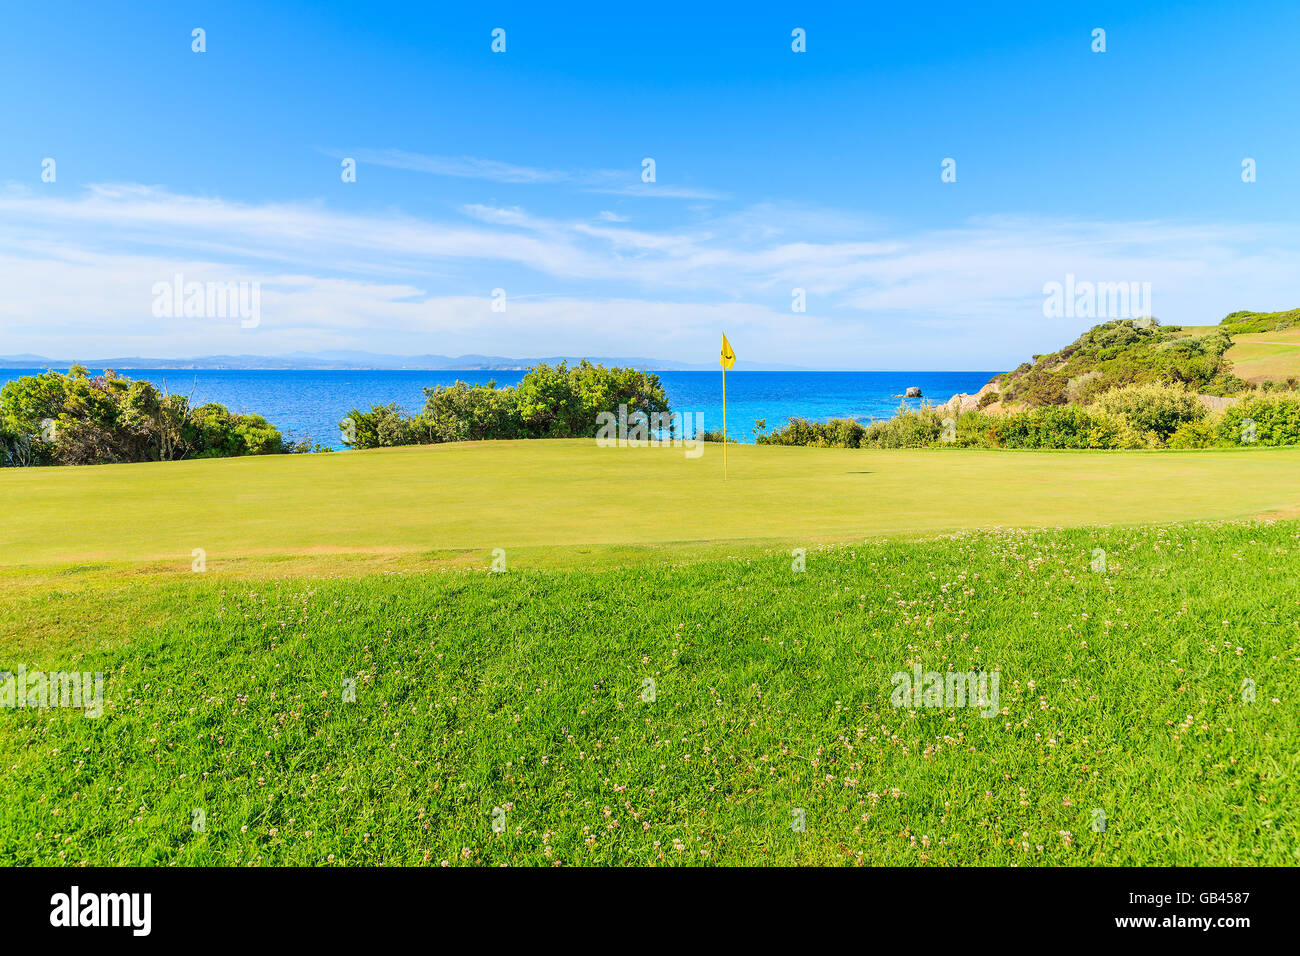 Corse, FRANCE - JUN 25, 2015 : Salon de l'herbe verte sur l'aire de jeu de golf sur l'île de Corse, France. Banque D'Images